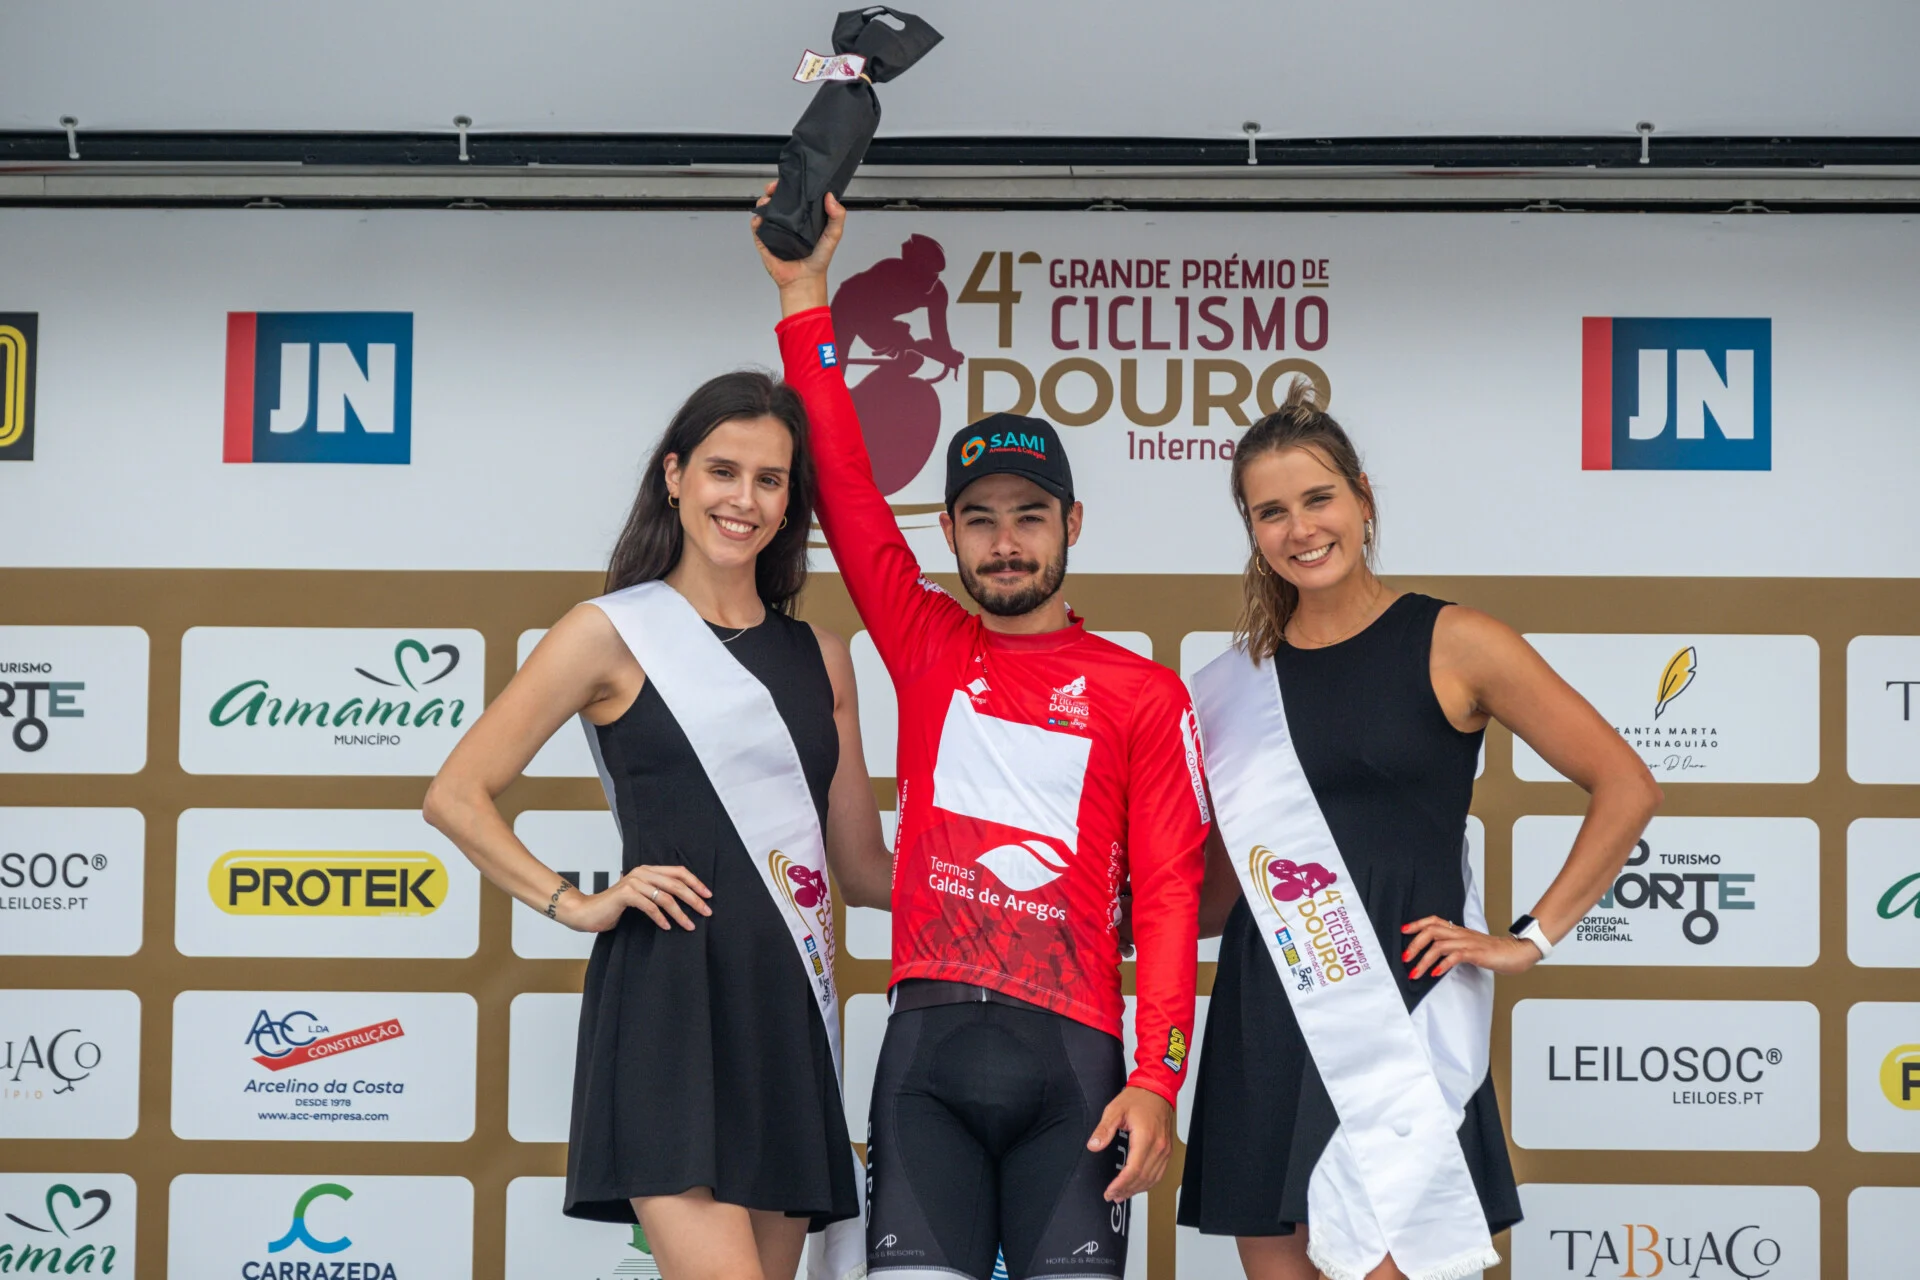 Clube Ciclismo de Tavira - 4ª GP CICLISMO DOURO Internacional12